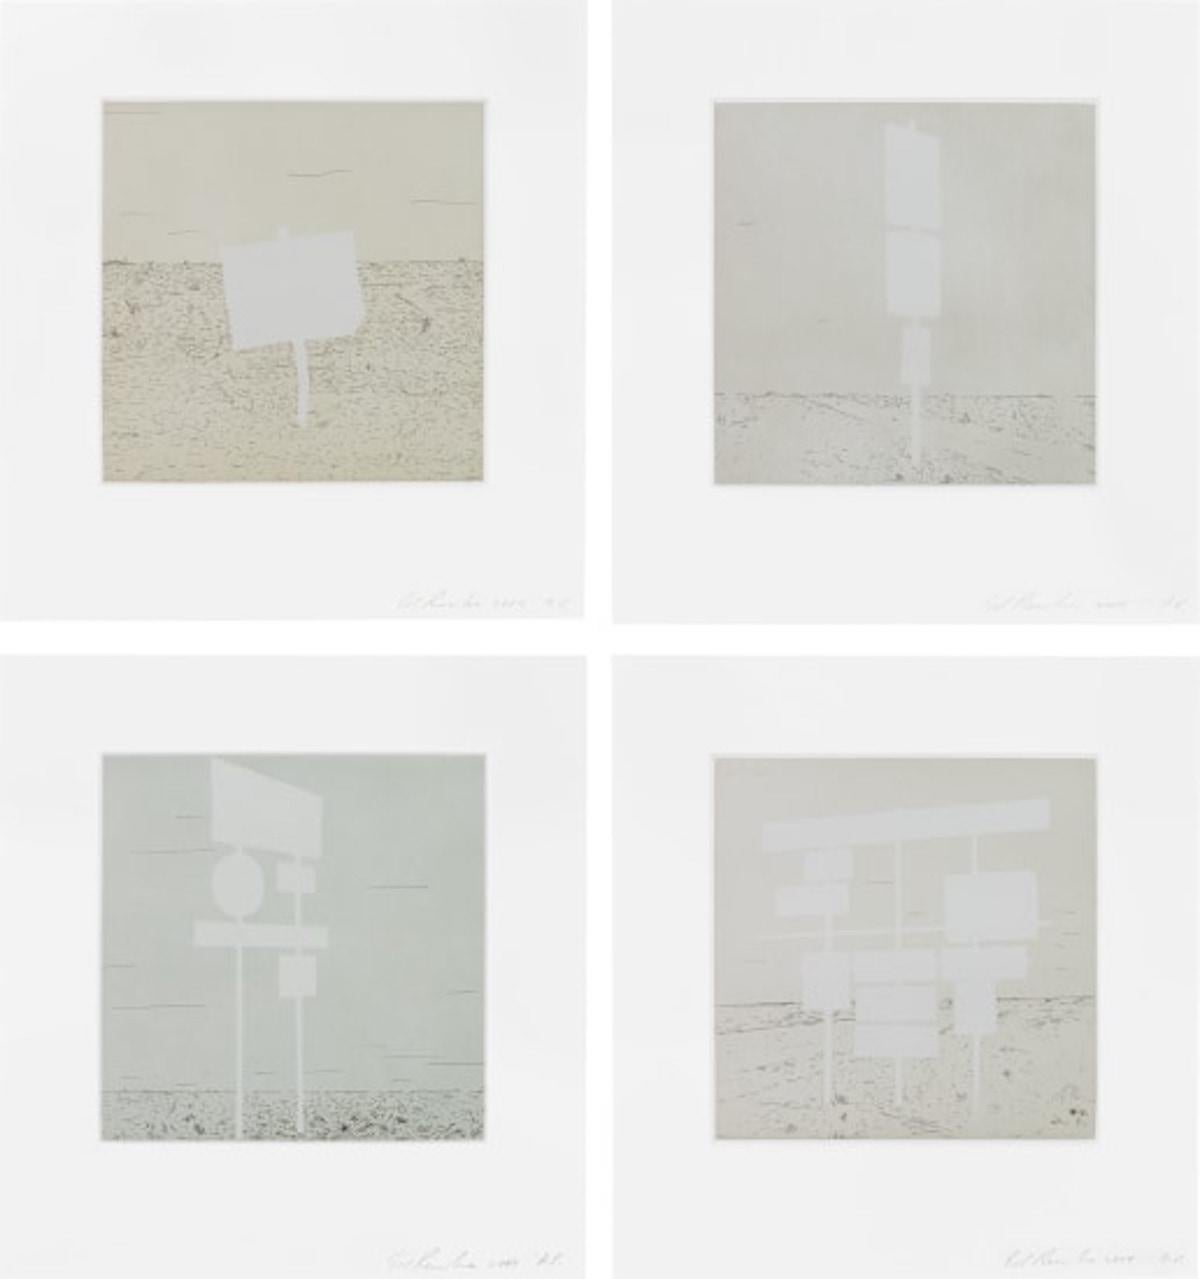 ED RUSCHA (1937-aujourd'hui)

Cette pièce 'Blank Signs' est l'ensemble complet de quatre eaux-fortes et aquatintes en couleurs sur papier Magnani Pescia, avec des marges complètes, conçu en 2004. Chaque épreuve est signée, datée et annotée "A.P." au